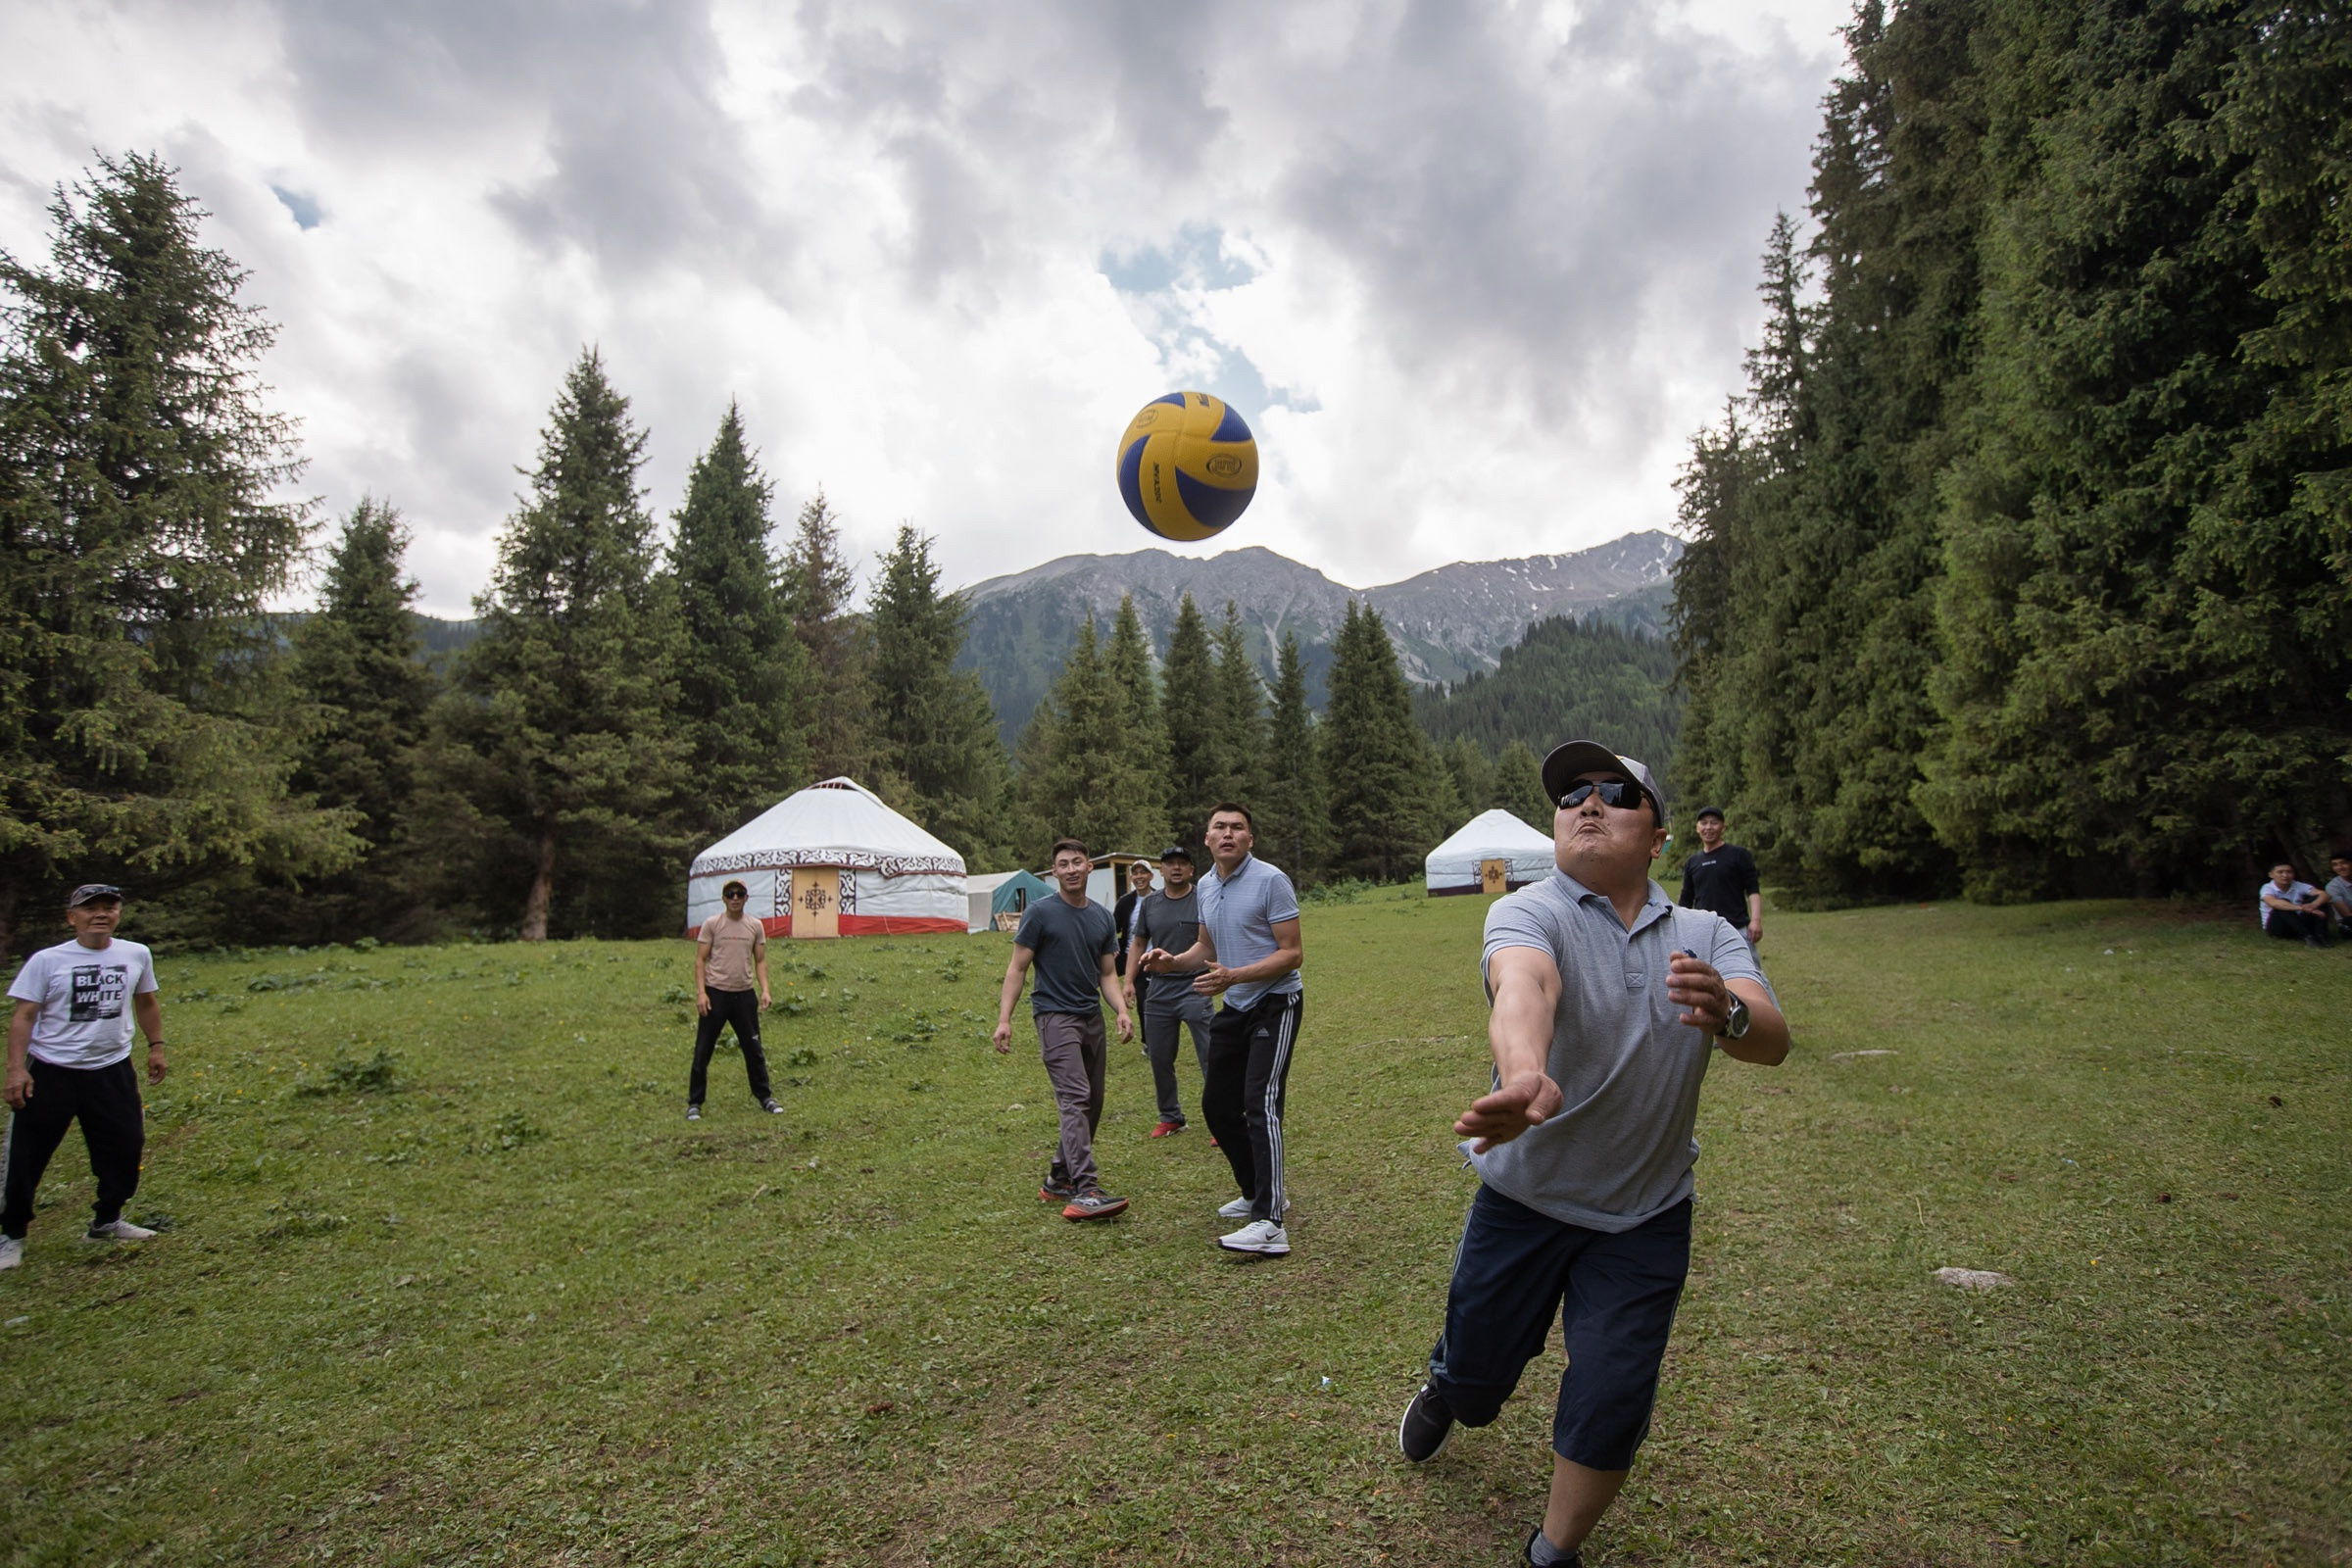 Местные жители ведут активный образ жизни: играют в волейбол, футбол, состязаются на лошадях